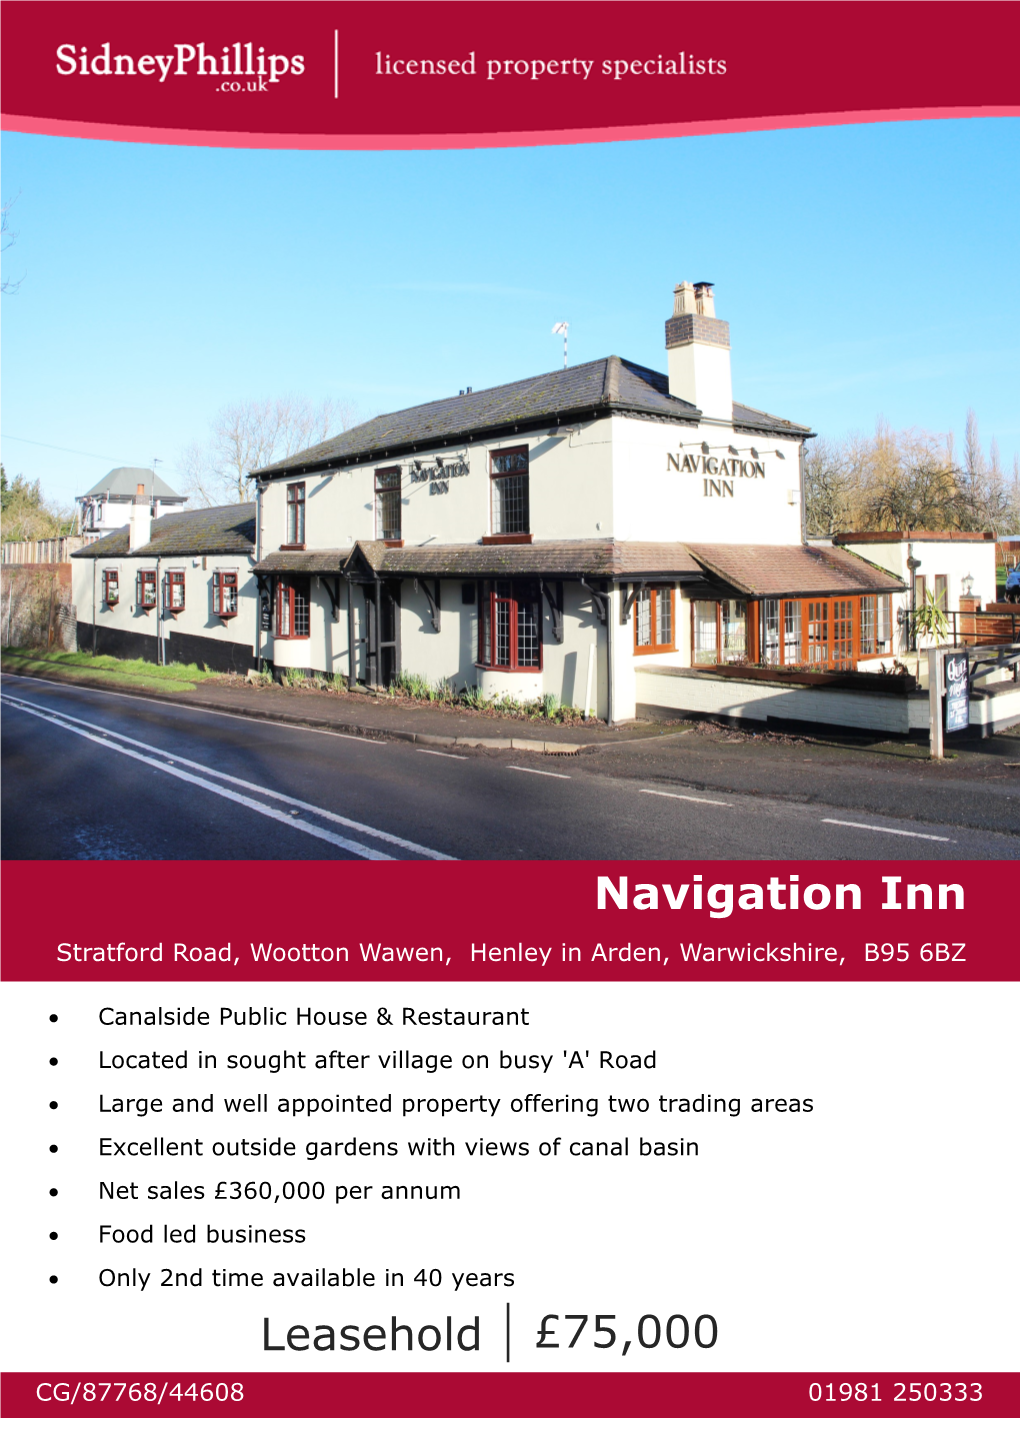 Navigation Inn Stratford Road, Wootton Wawen, Henley in Arden, Warwickshire, B95 6BZ